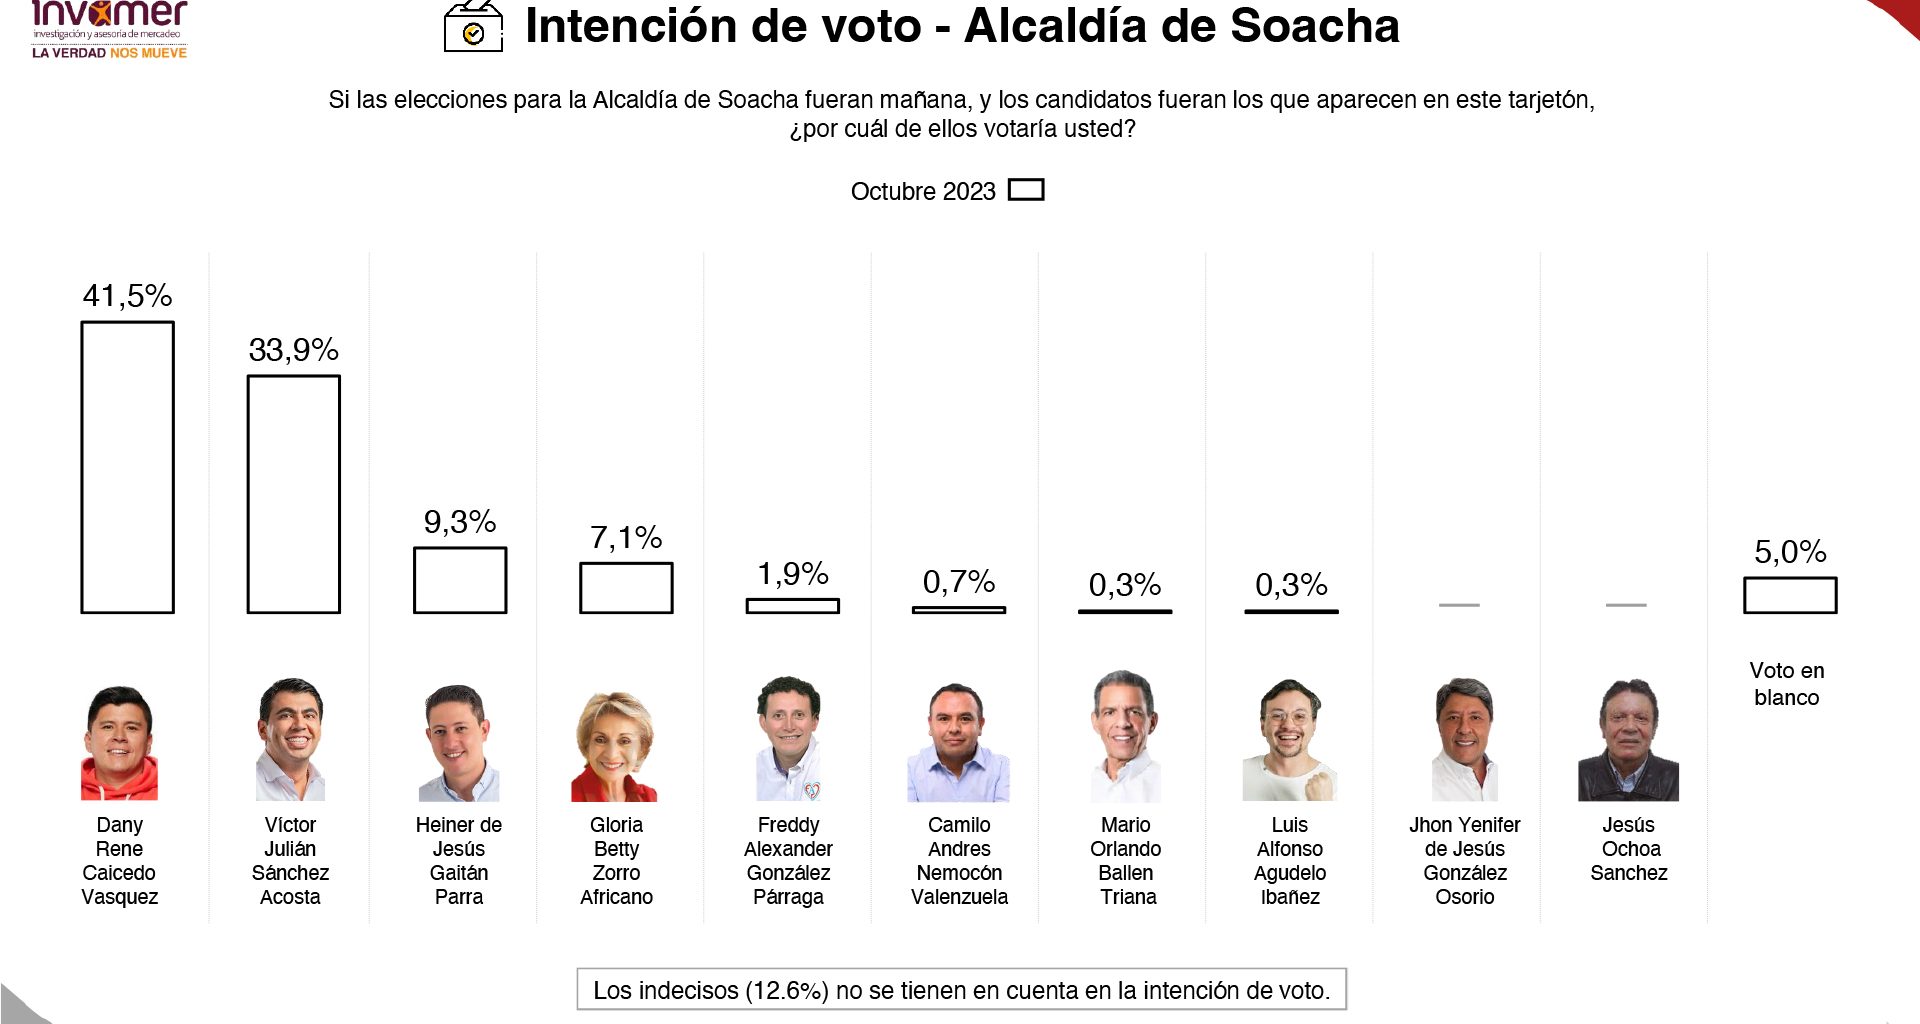 Invamer,una de las mejores encuestadoras del país: Danny Caicedo, el inminente ganador de la Alcaldía de Soacha con el 41,5%